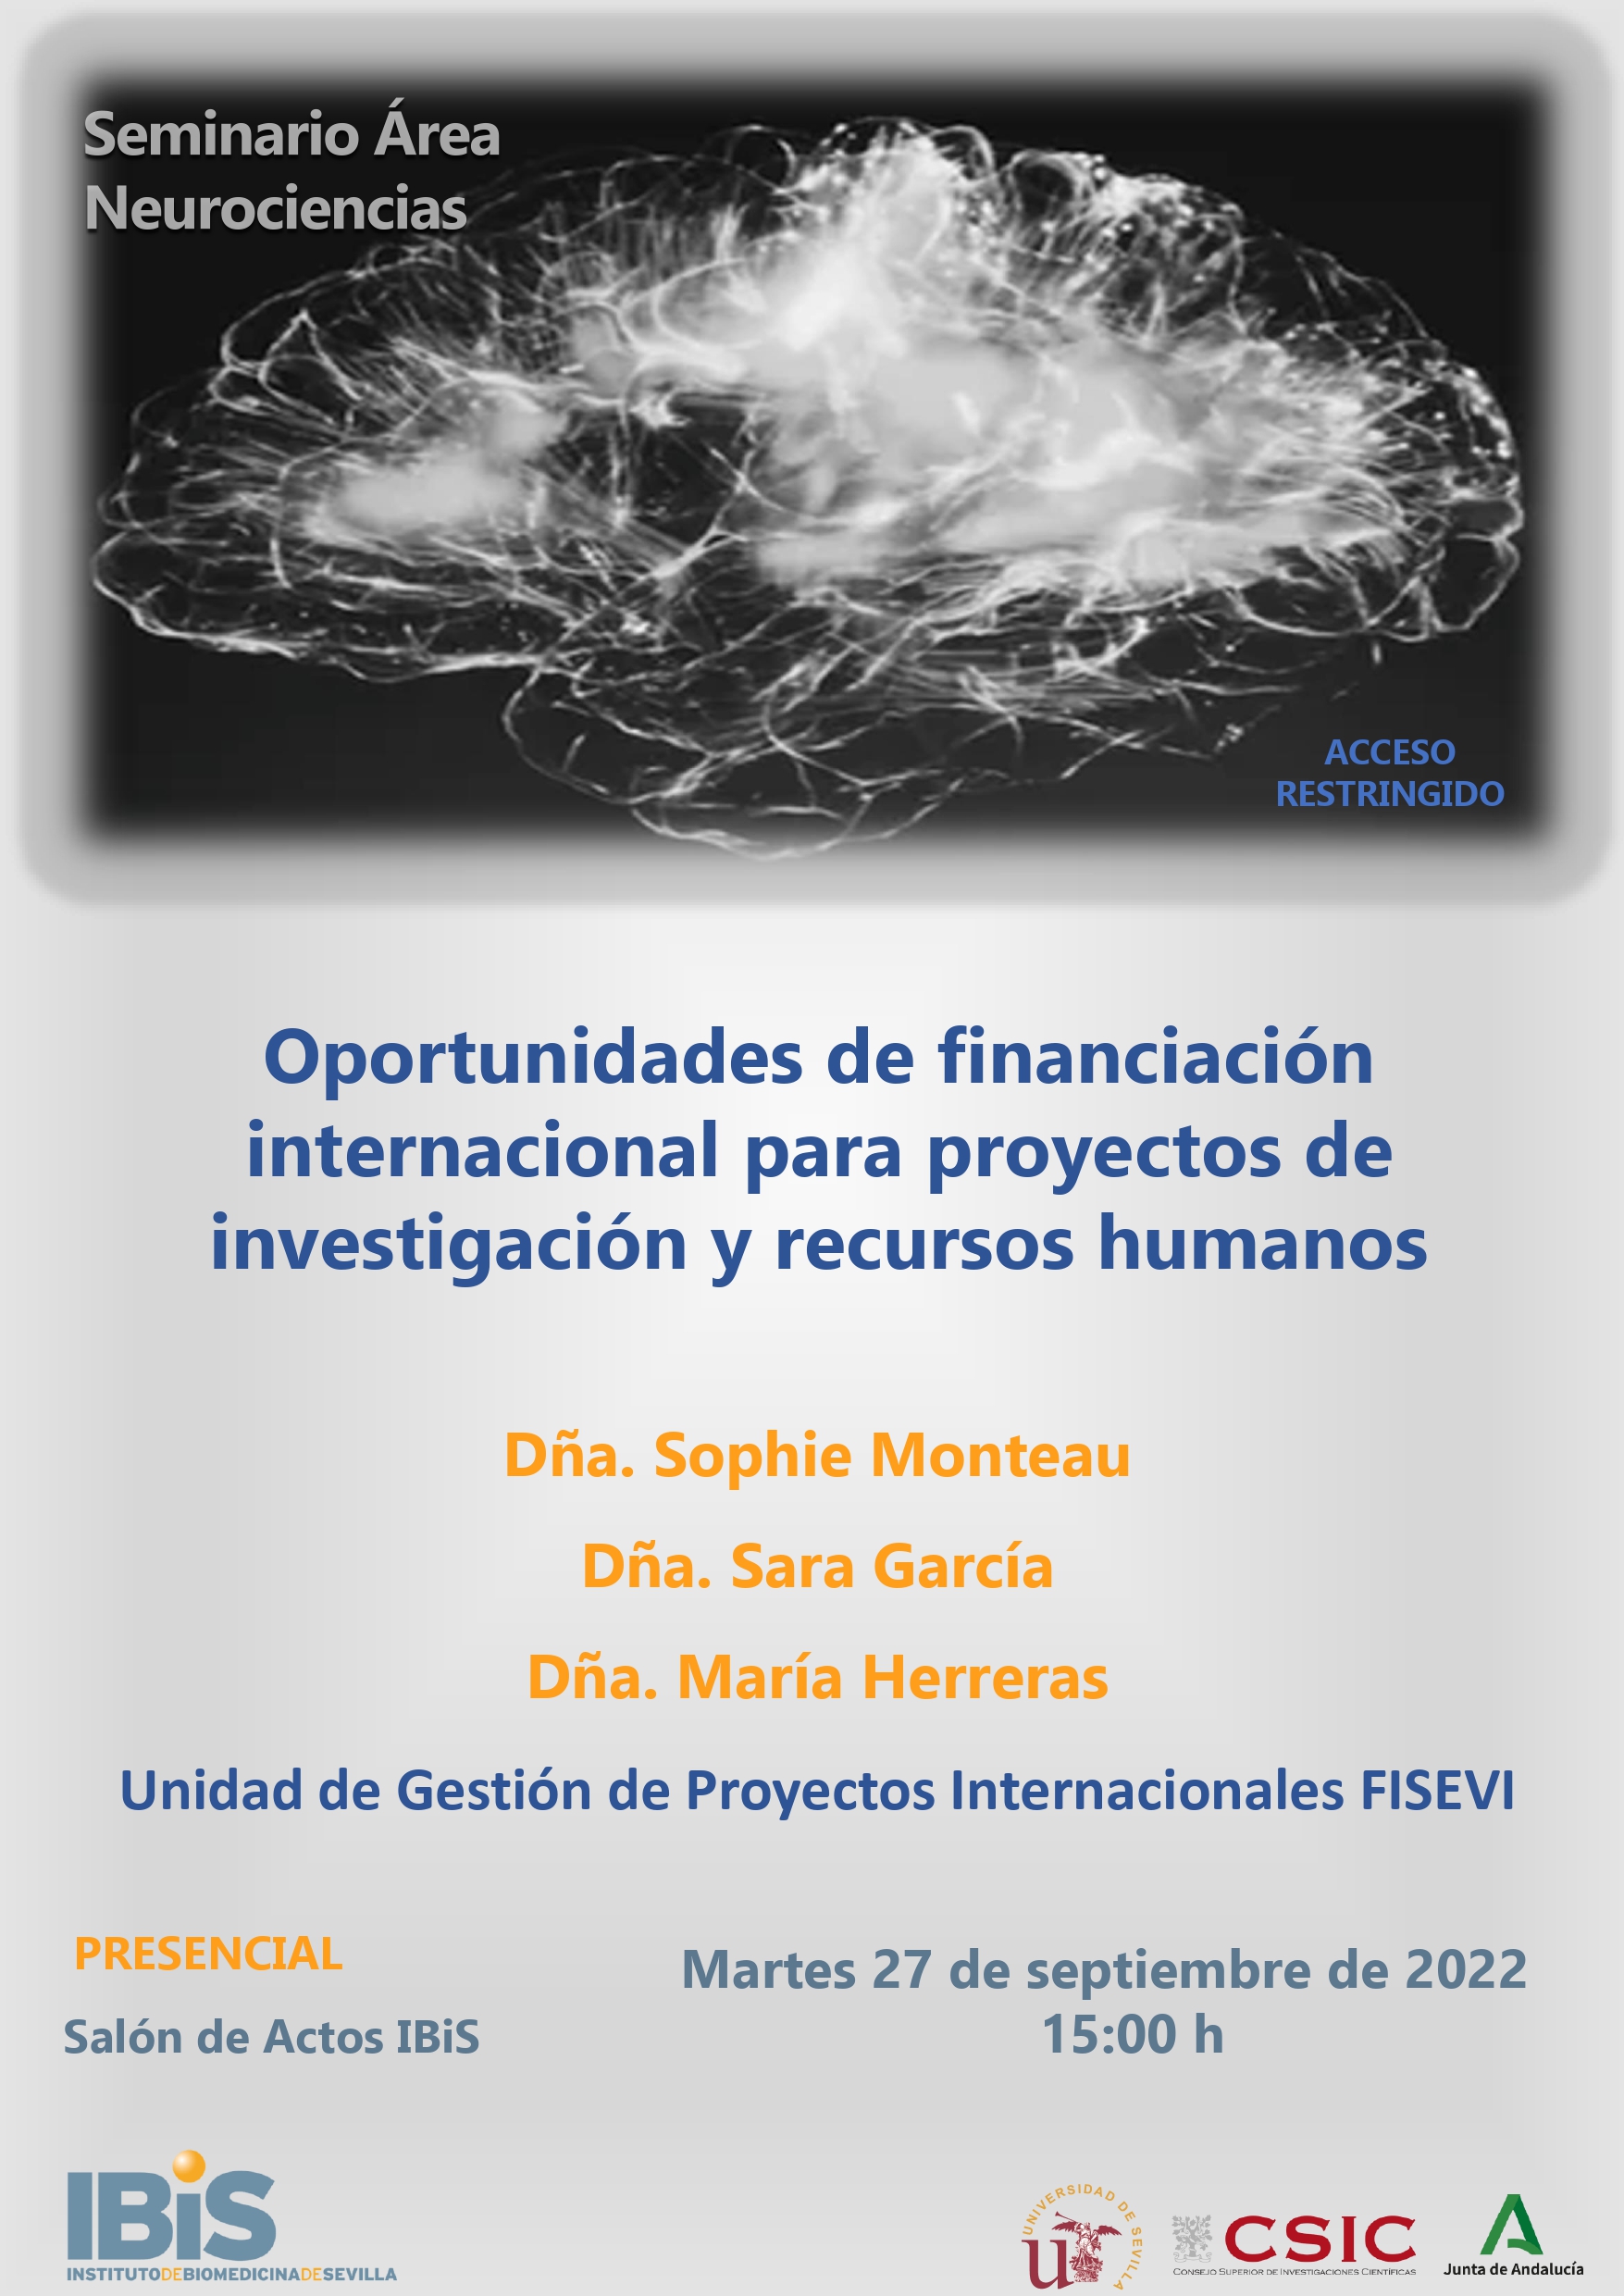 Poster: Oportunidades de financiación internacional para proyectos de investigación y recursos humanos para el Área de Neurociencias